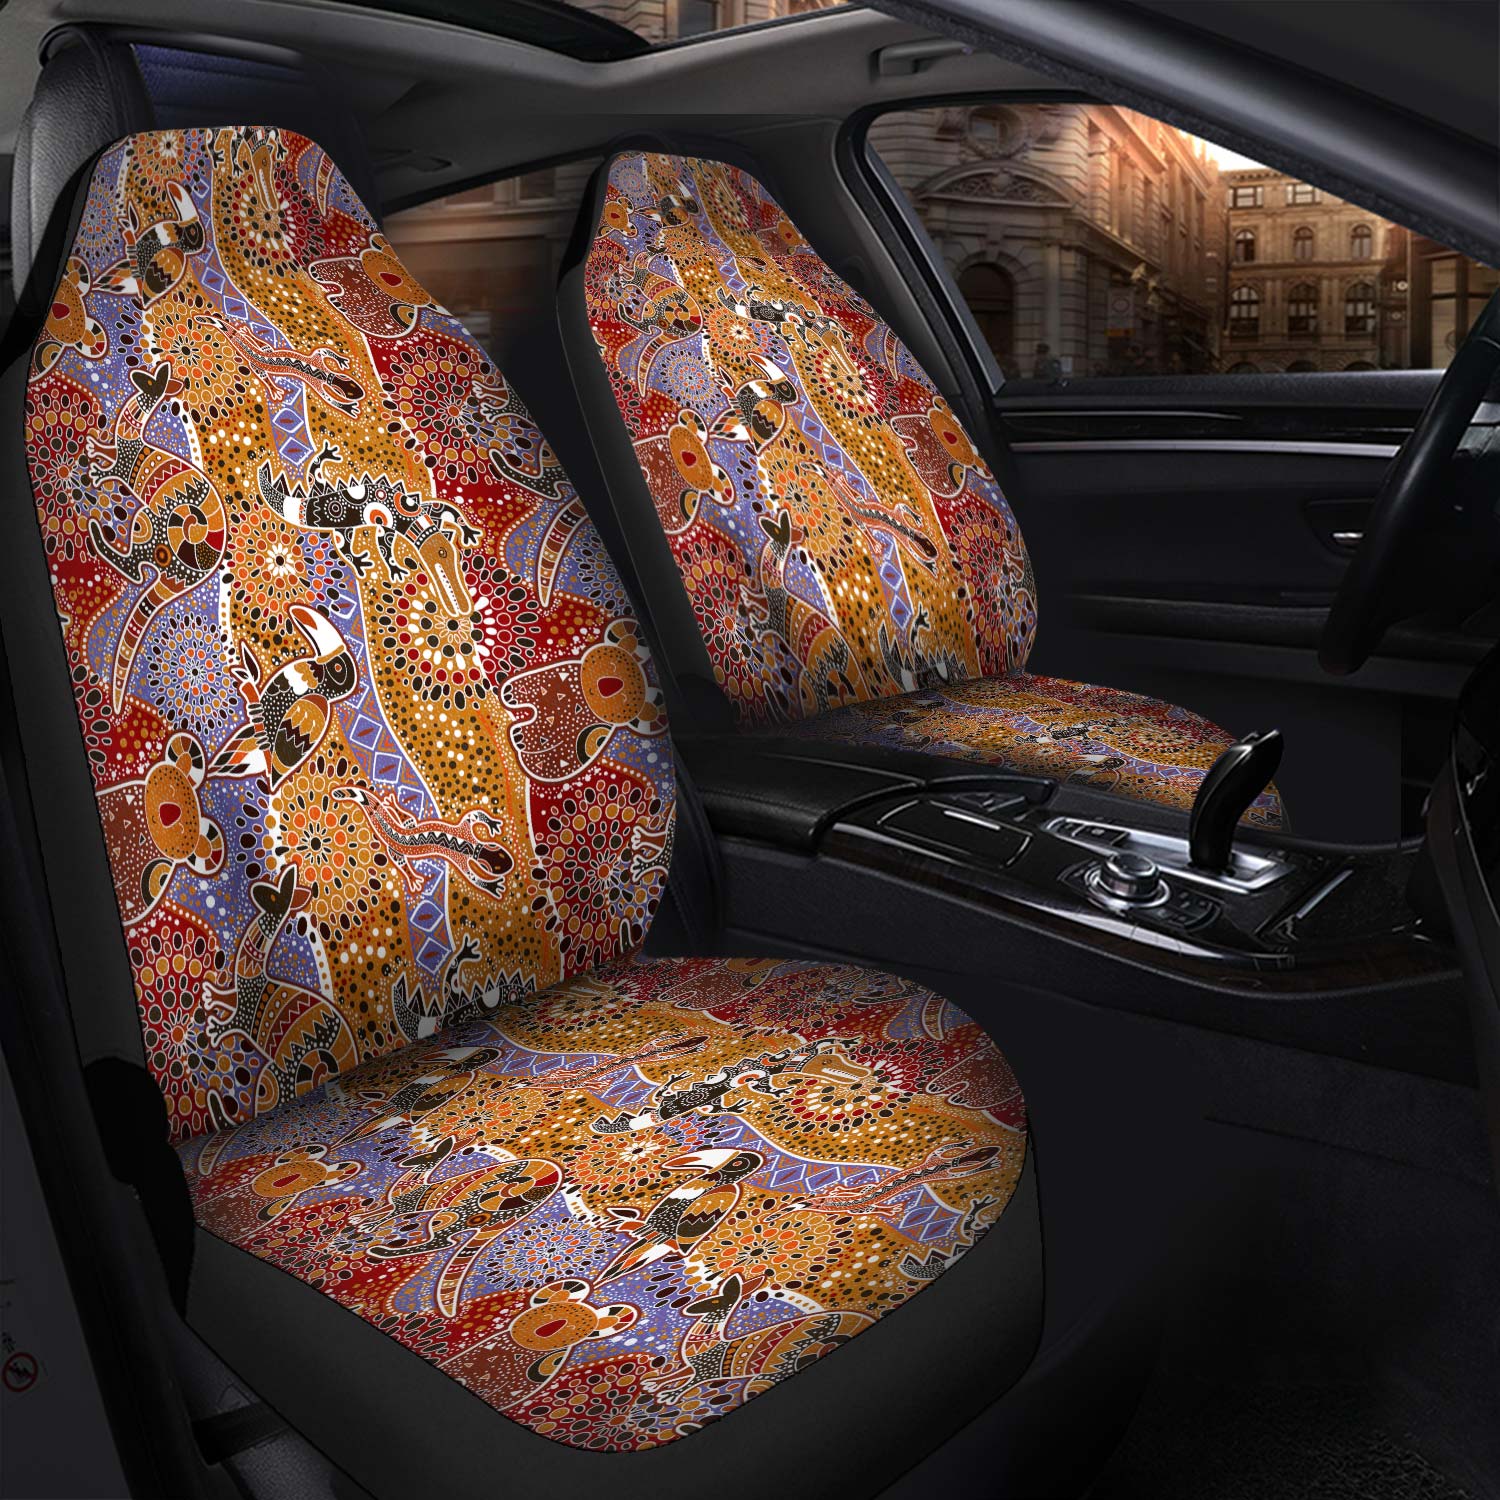 Australia Aboriginal   Car Seat Cover Aboriginal Inspired Patterns Australian Animals Car Seat Cover